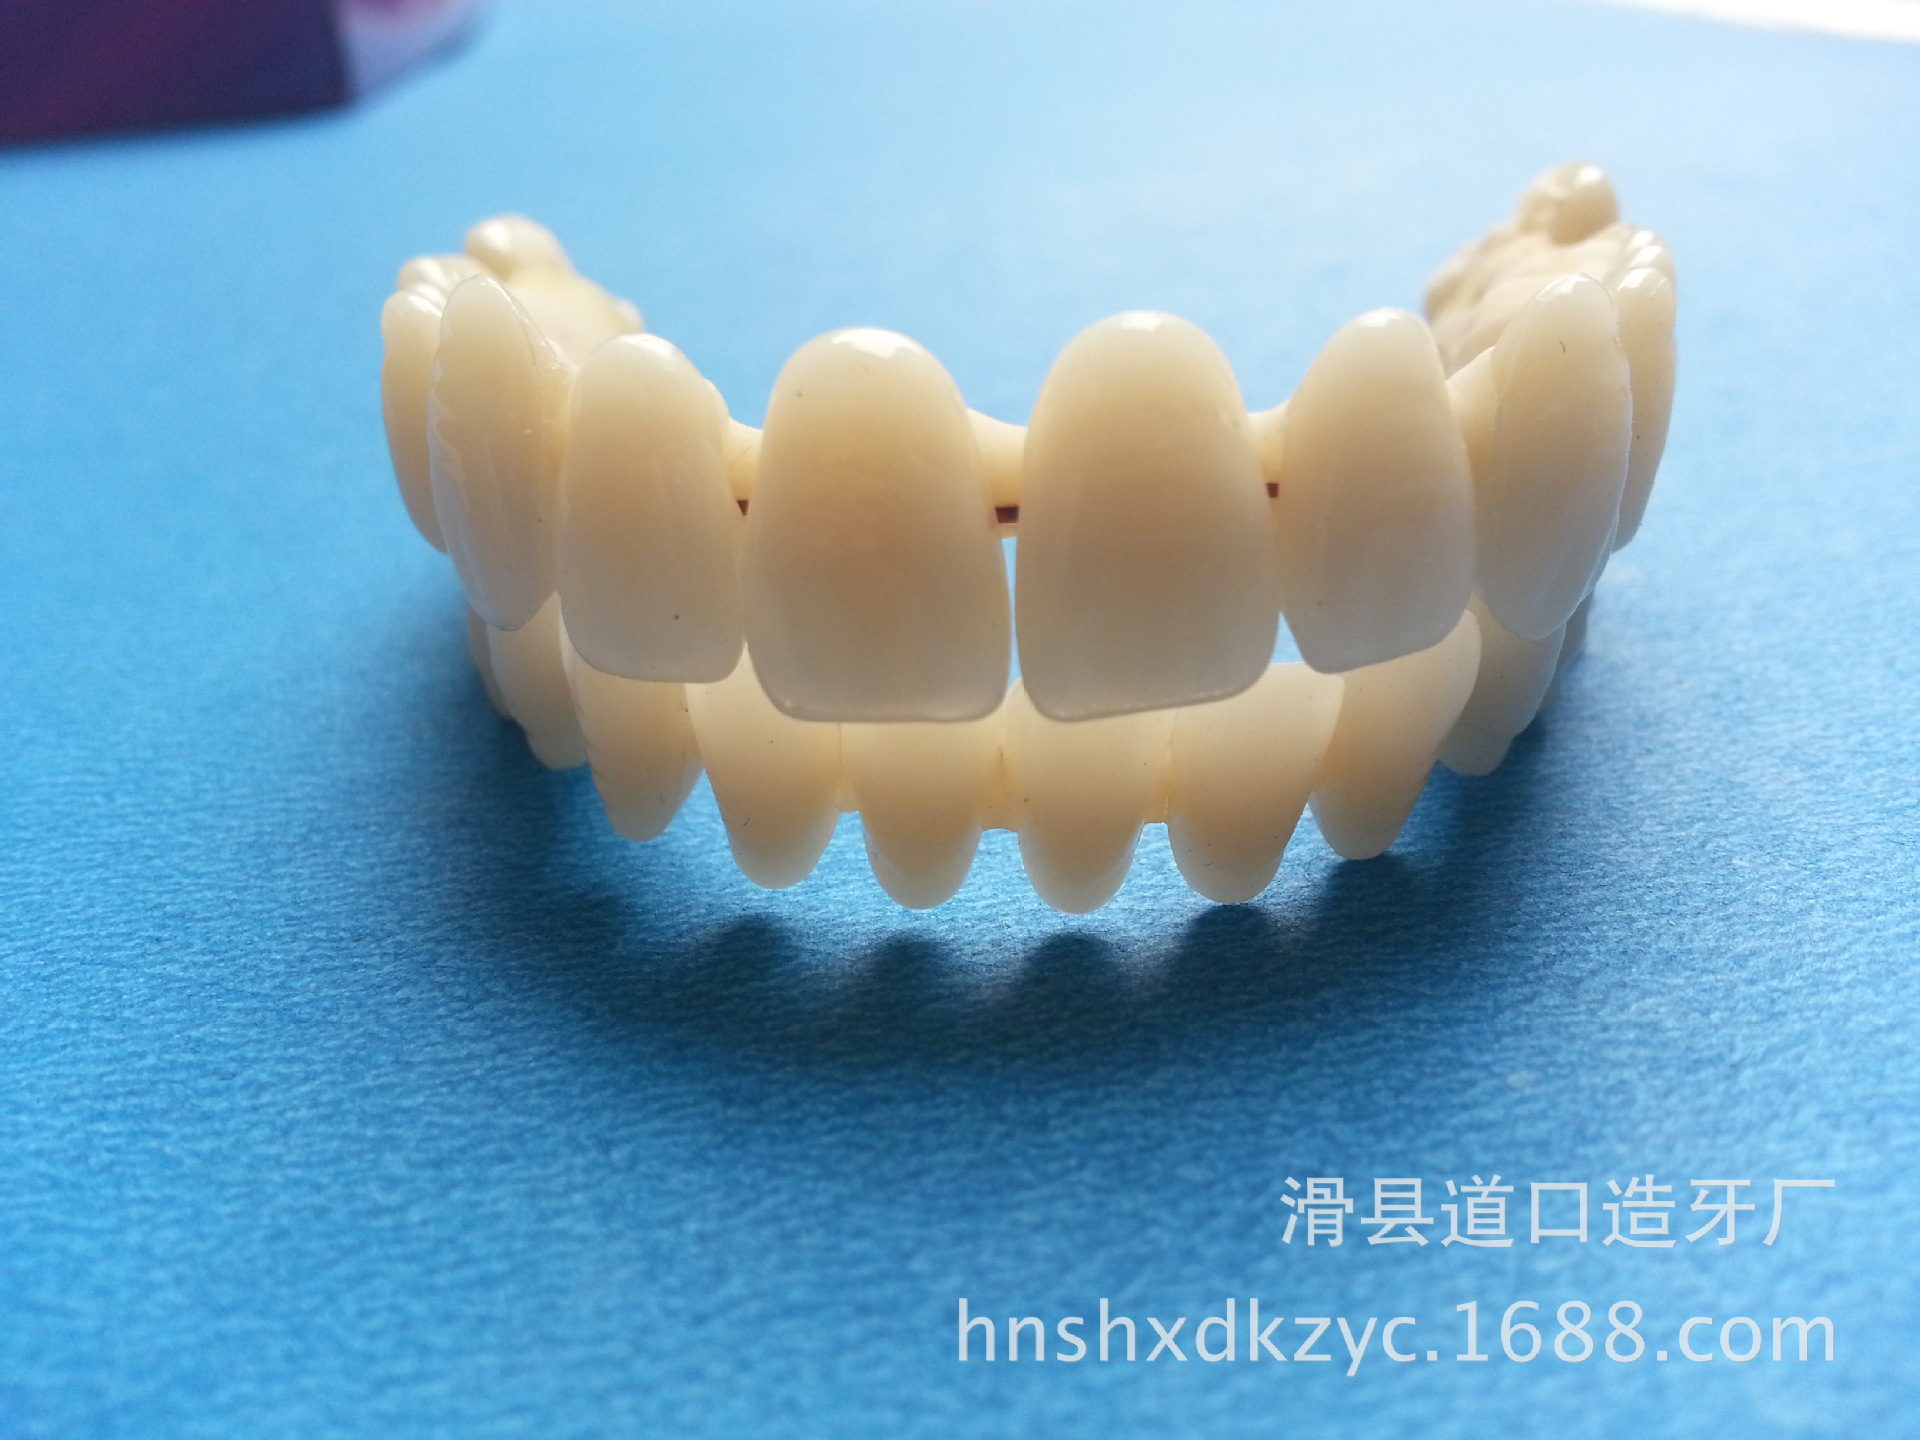 牙科树脂/牙模 导板牙科铸造树脂 临时呀冠牙齿矫正华鑫光敏树脂-淘宝网